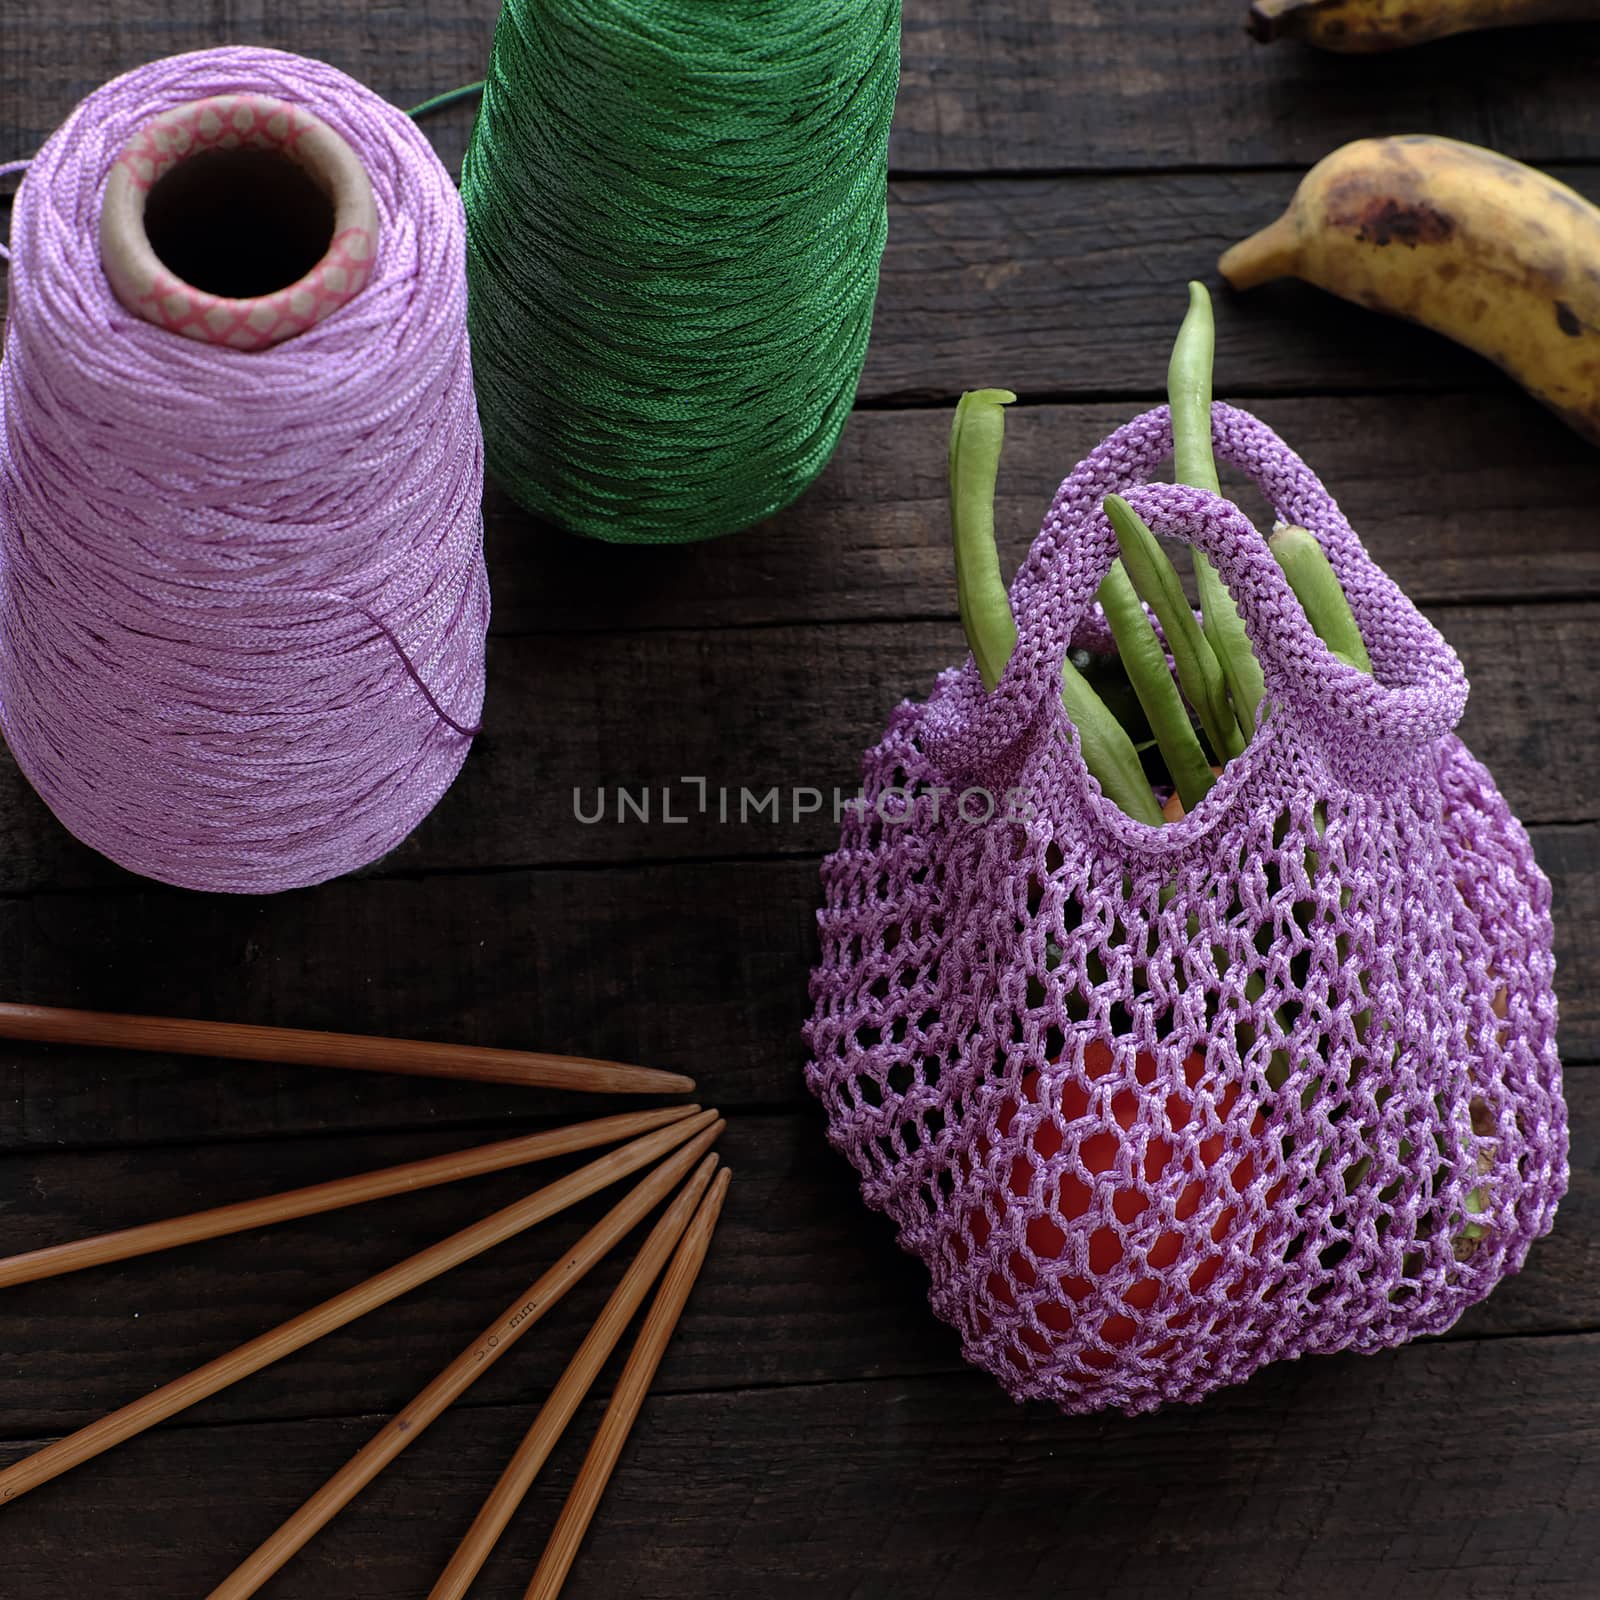 knit handmade handbag from yarn by xuanhuongho